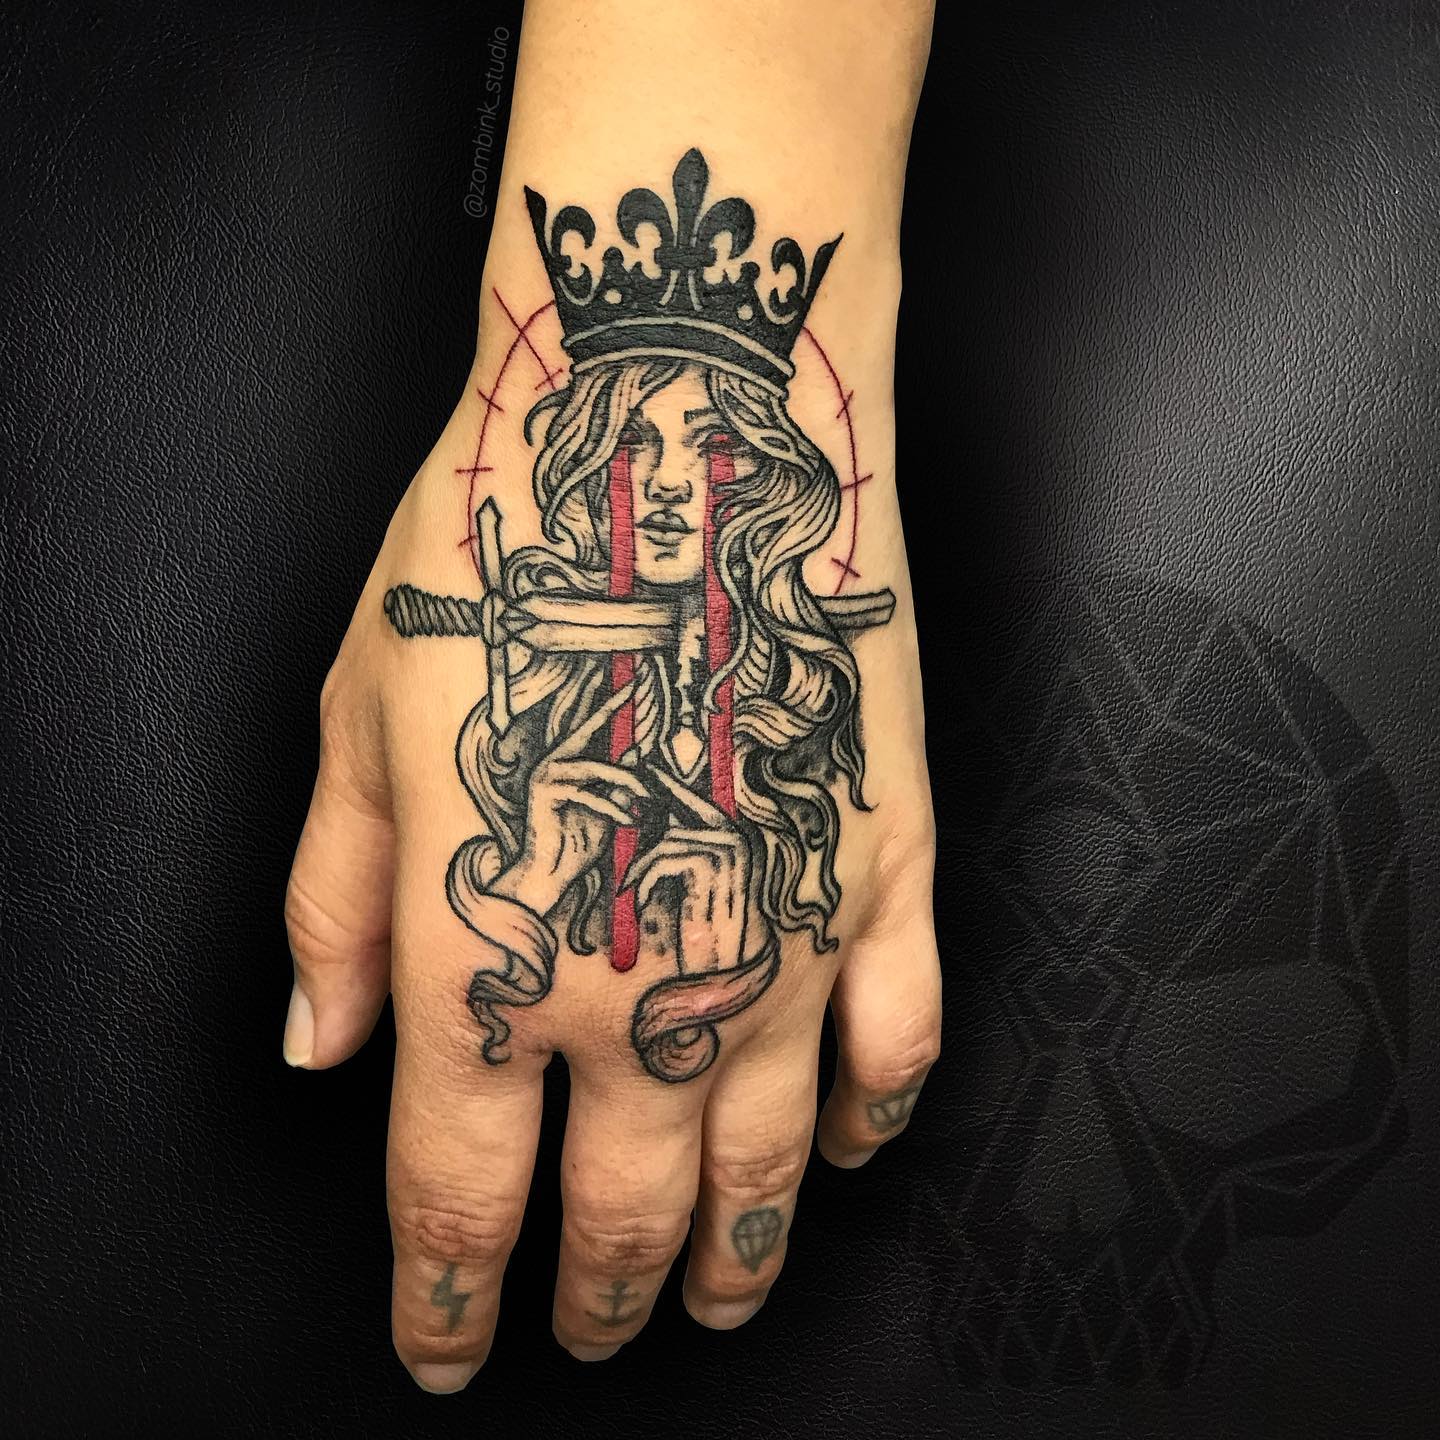 Tatuaje de Reina de Espadas en la mano.